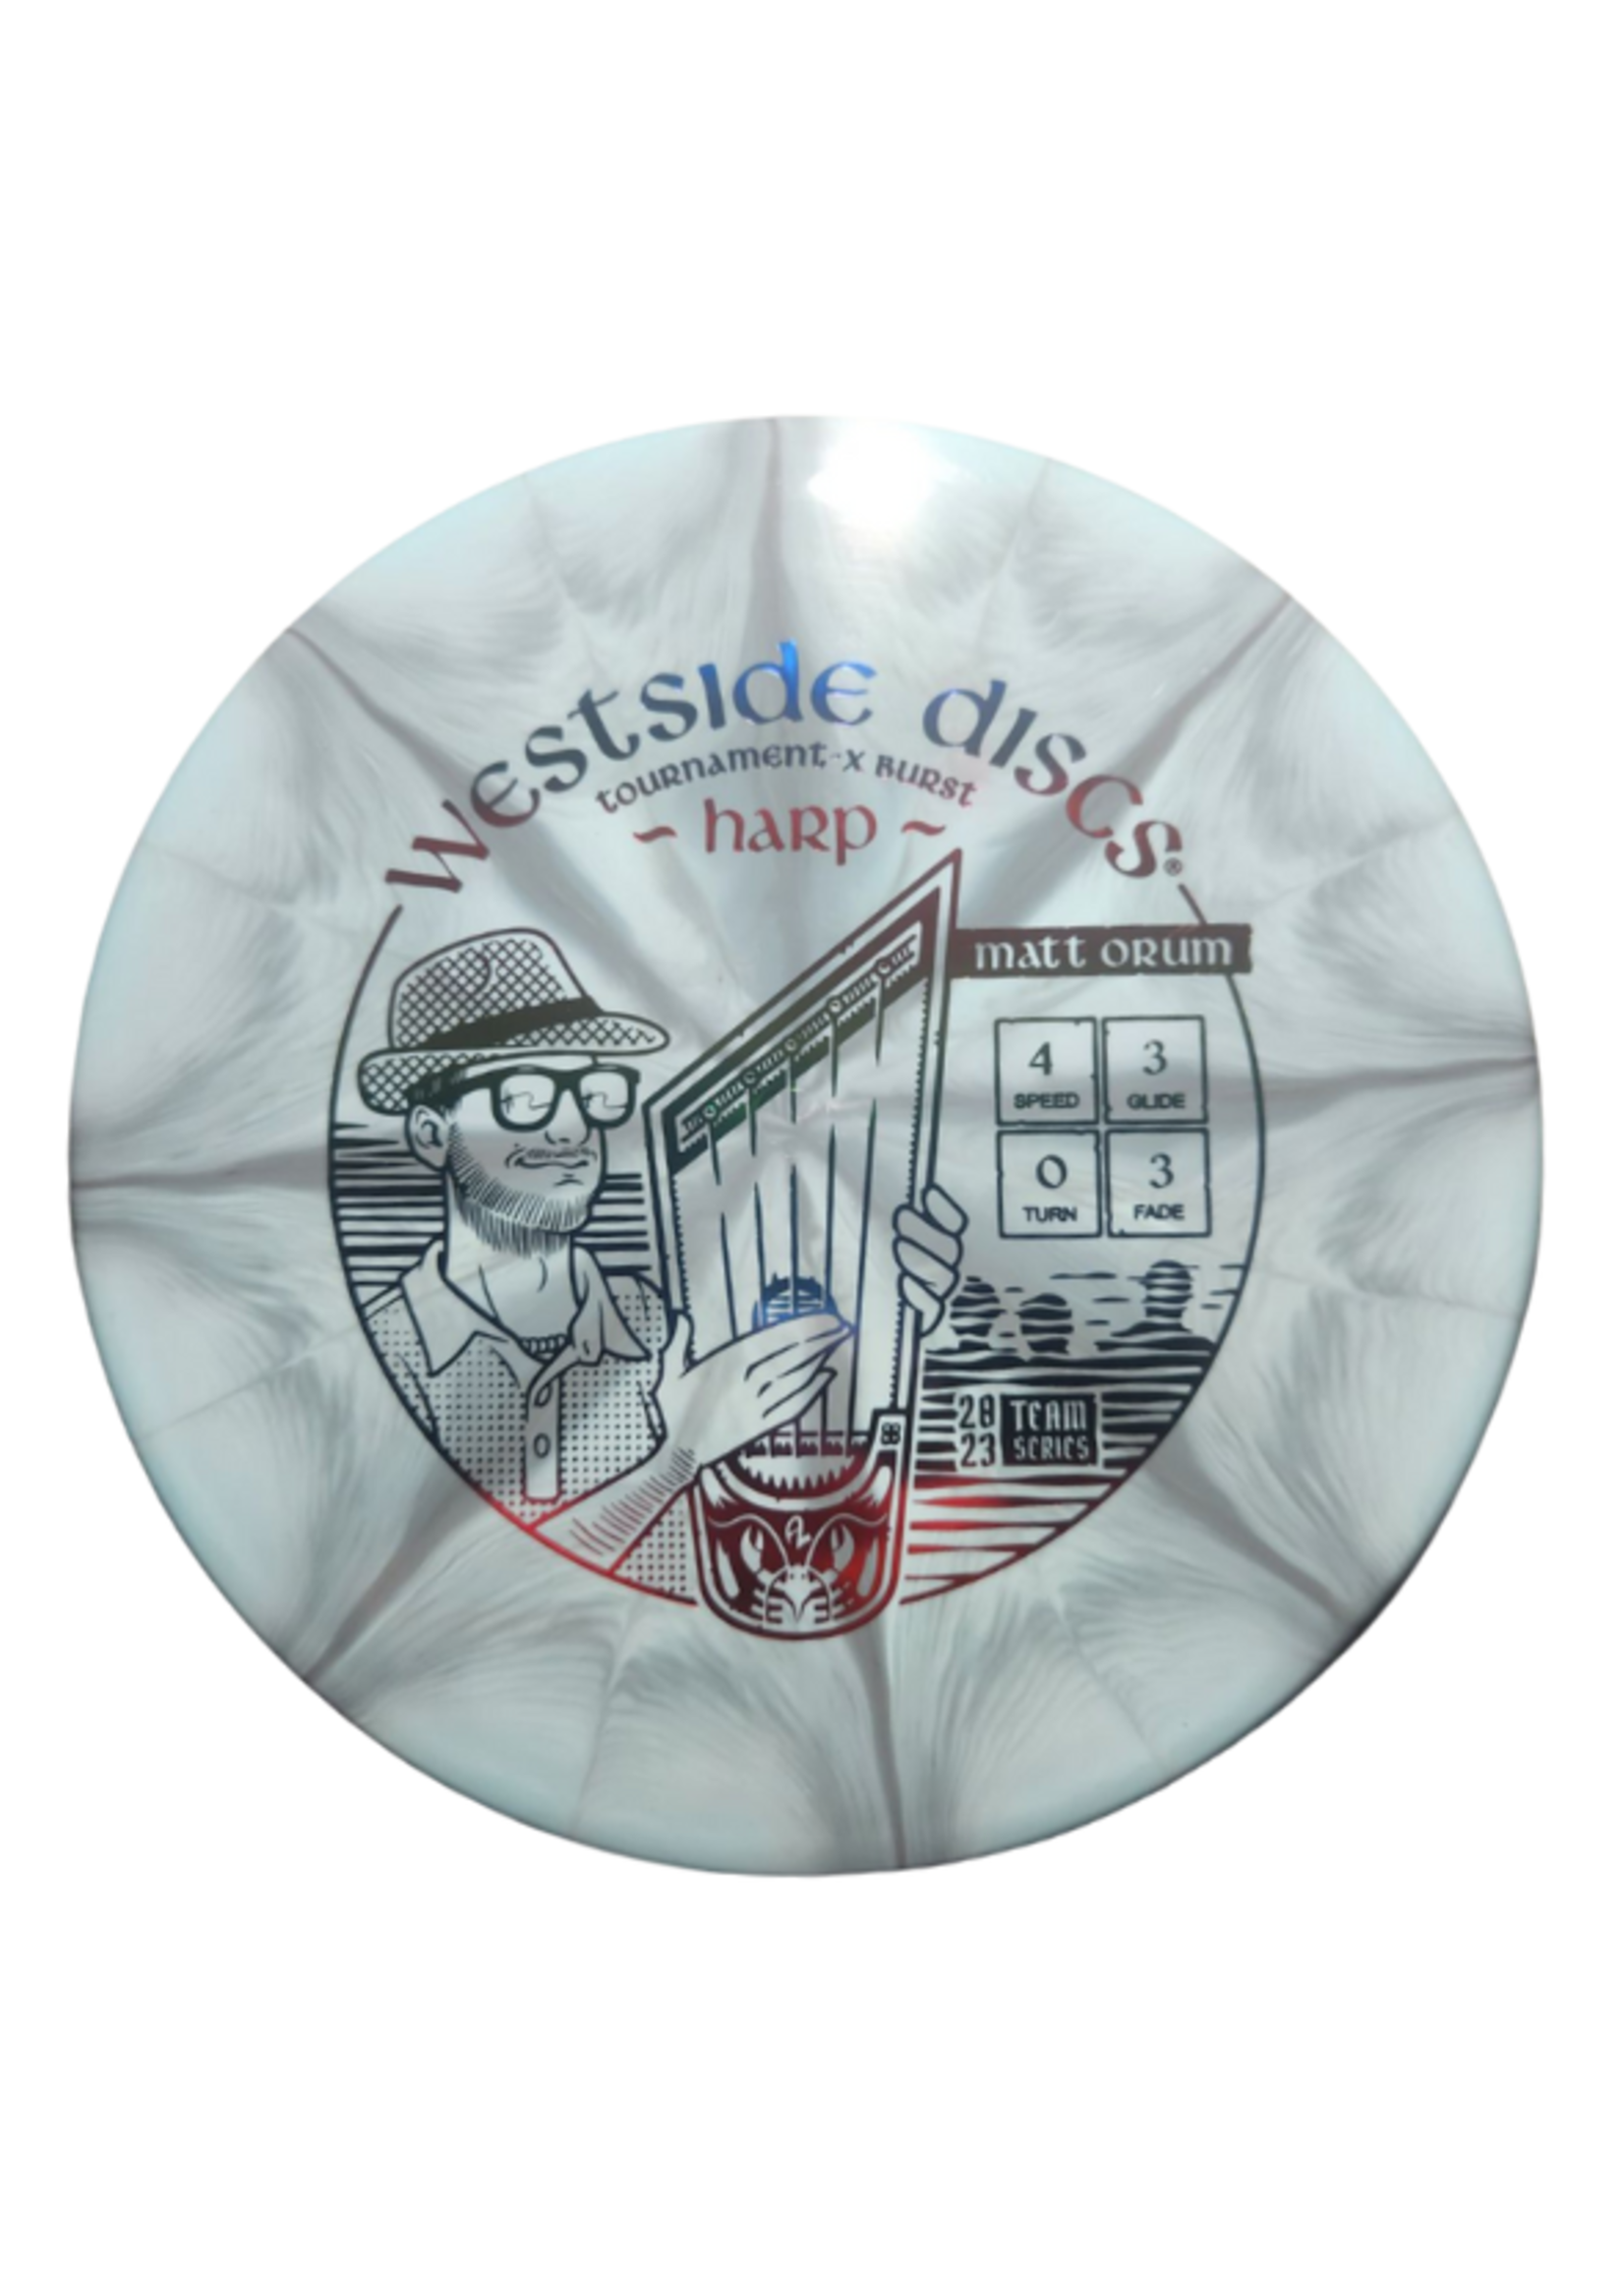 Westside Discs Westside Discs Tournament-X Burst Harp Matt Orum 2023